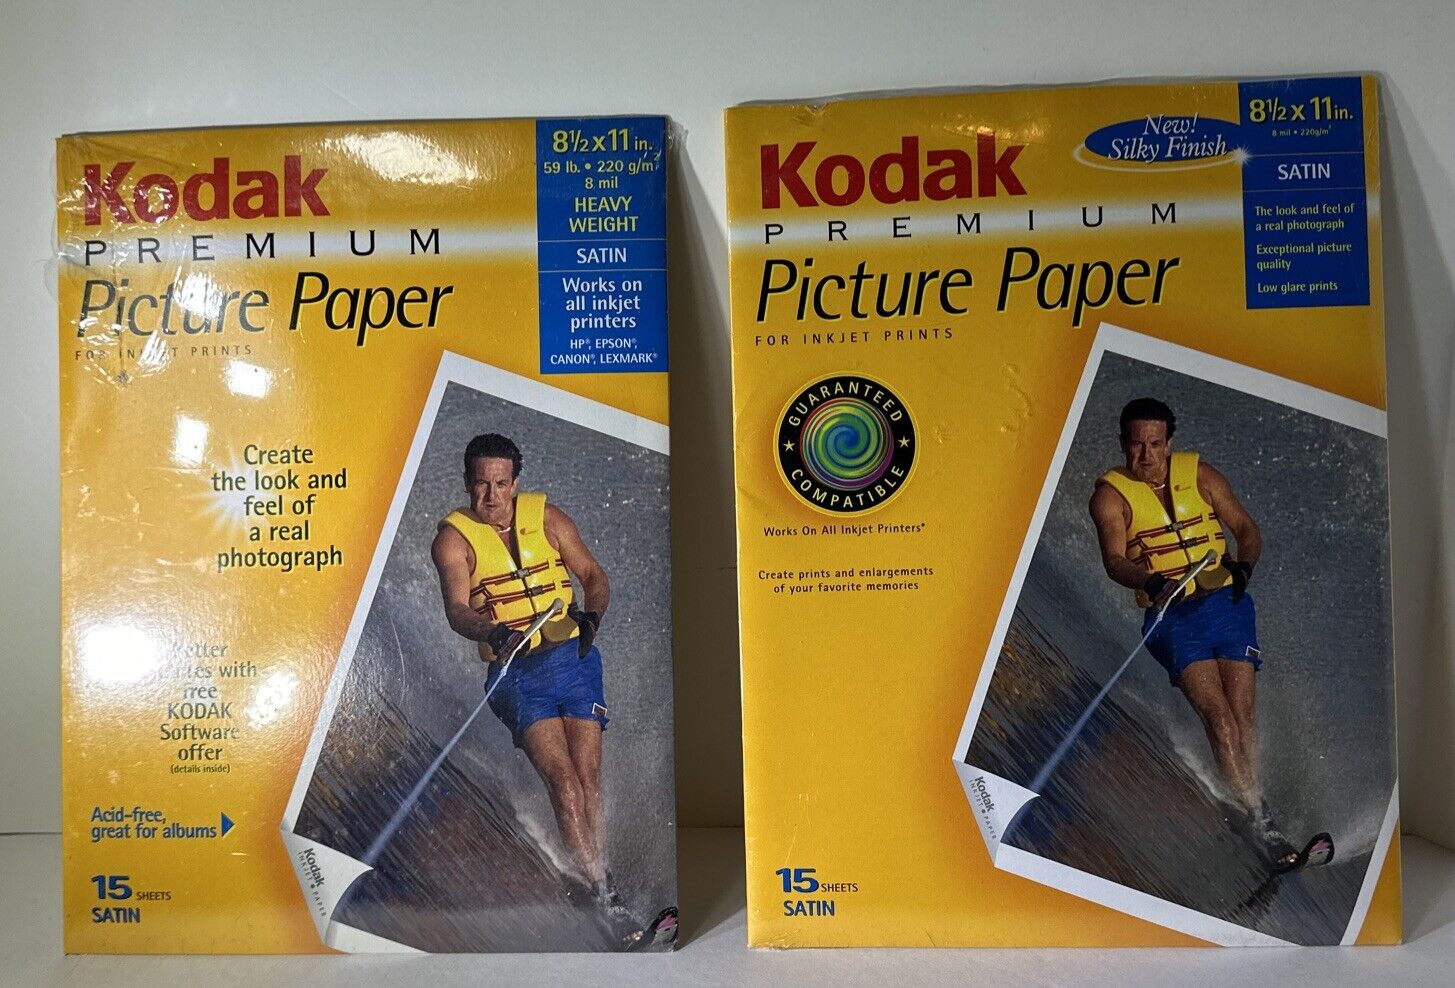 2 Packs KODAK PREMIUM PICTURE PAPER FOR INKJET PRINTS - 8 1/2 X 11 - NEW IN BOX